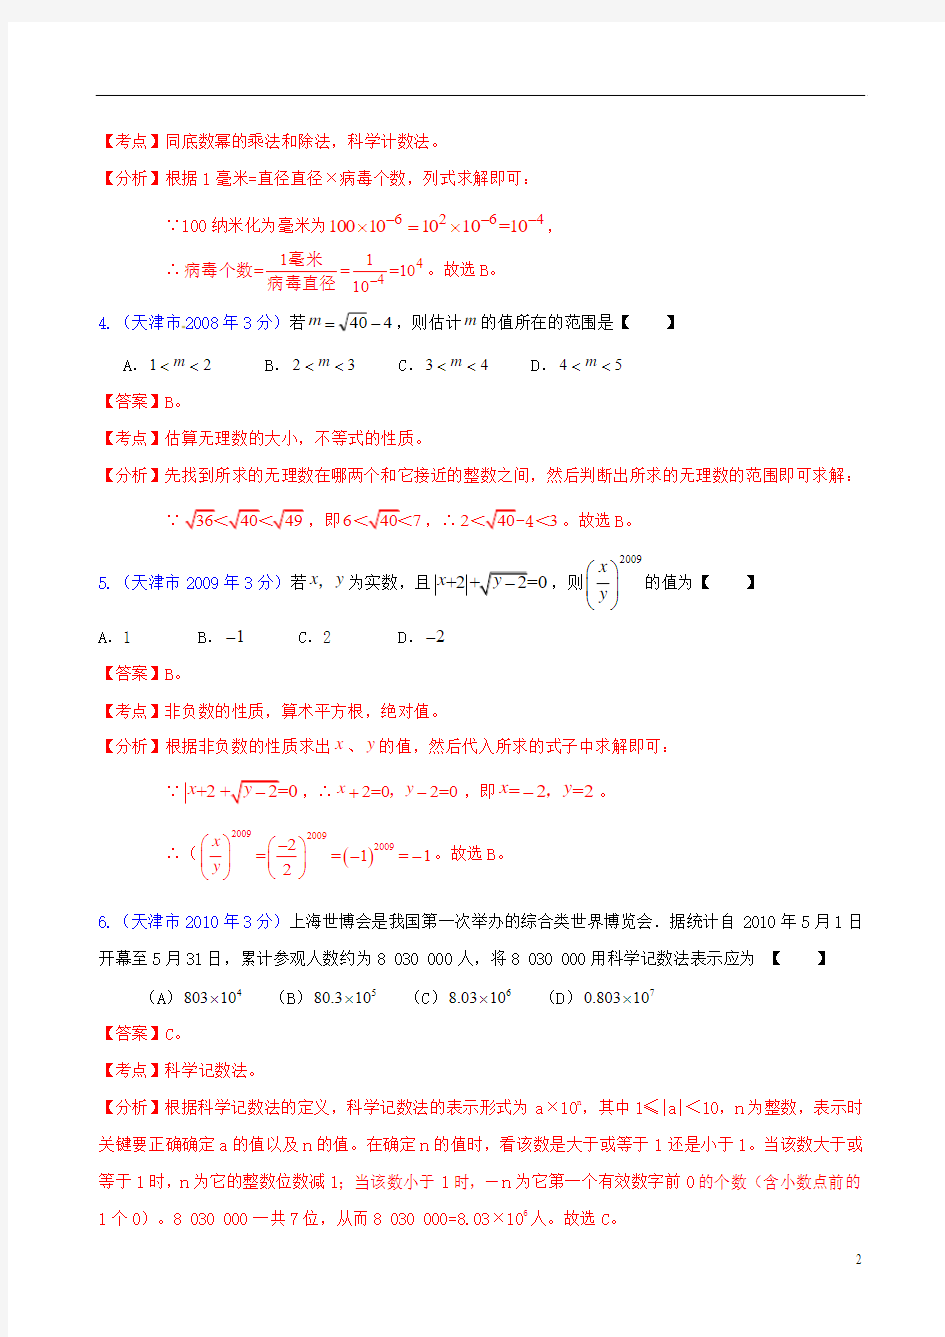 天津市2001-2012年中考数学试题分类解析 专题1 实数